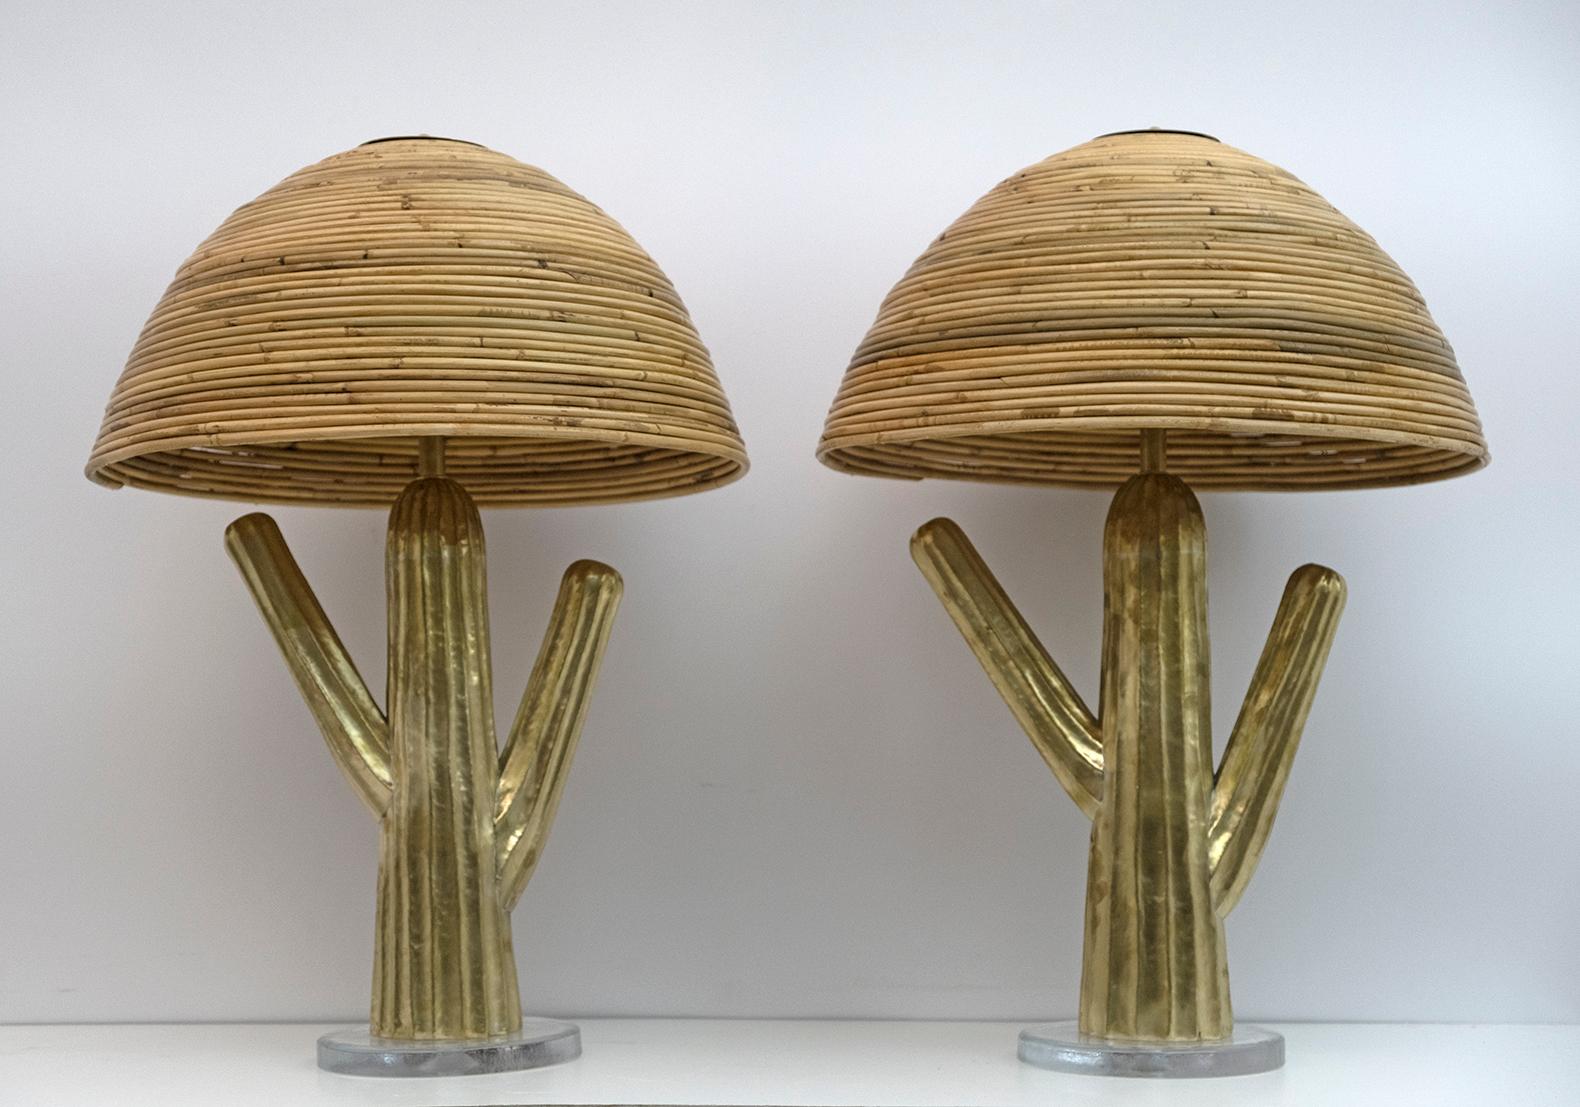 Ein Paar Hollywood-Regency-Tischlampen im Stil von Gabriella Crespi, in Form eines Kaktus aus Messing, Sockel aus Muranoglas, Lampenschirm aus Bambusrohr in der Art der berühmten italienischen Firma Vivai del Sud.
Die Lampen sind mit zwei